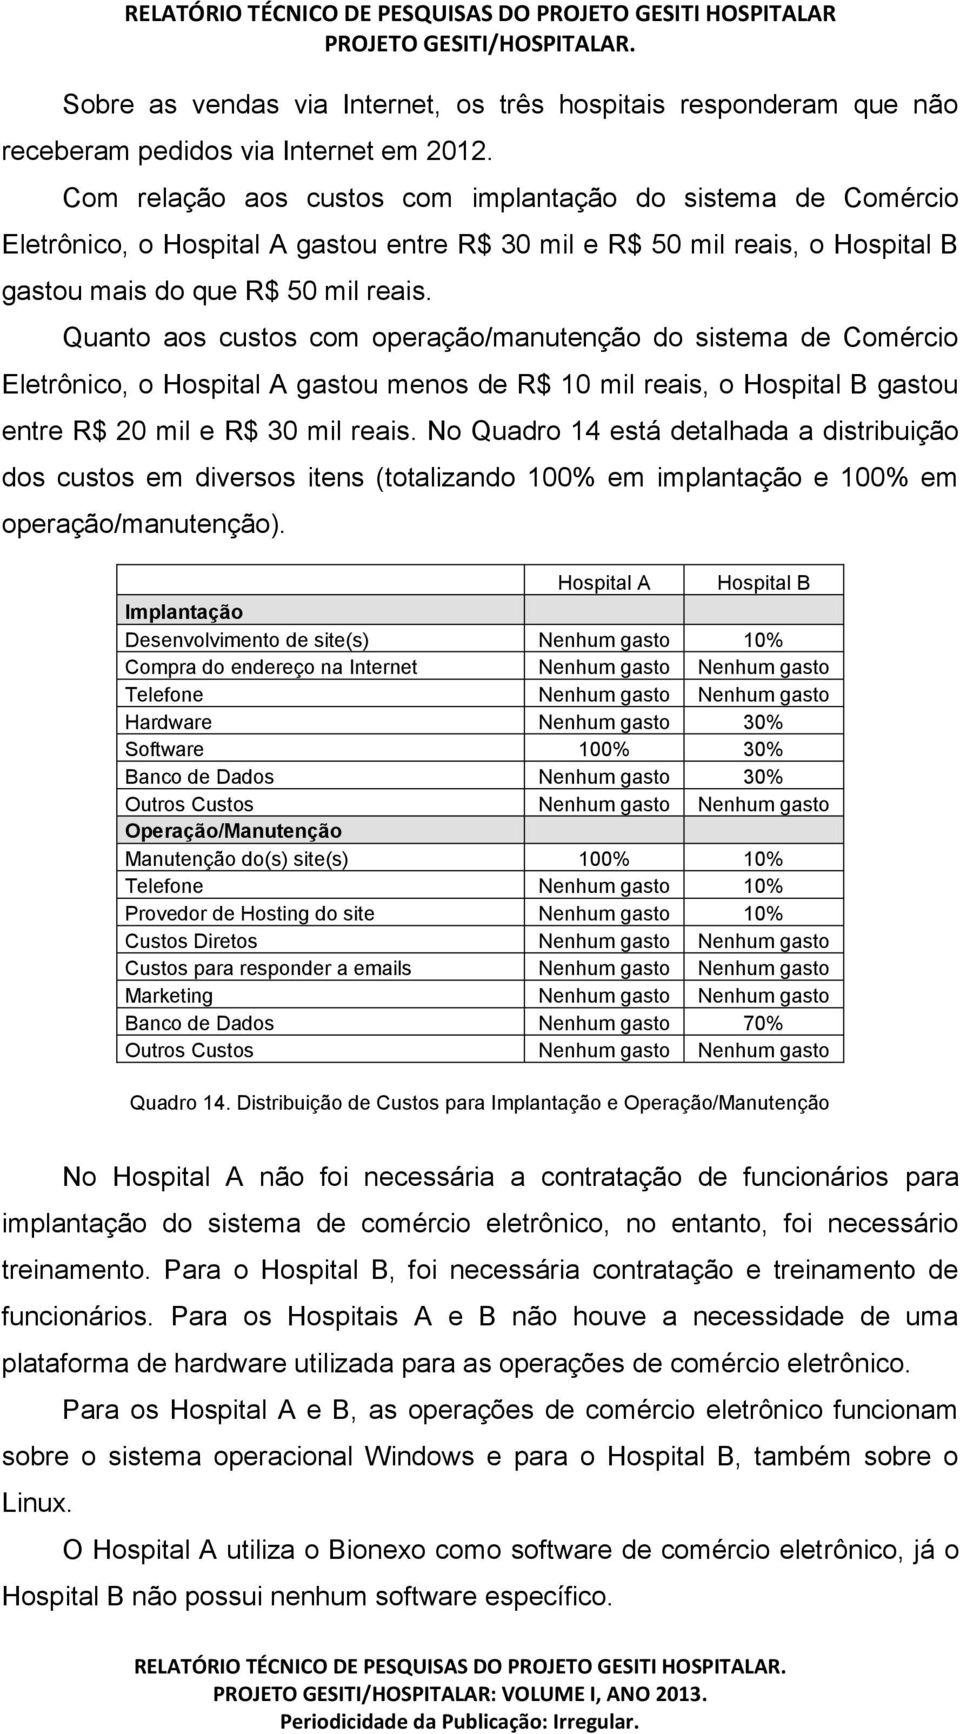 Quanto aos custos com operação/manutenção do sistema de Comércio Eletrônico, o Hospital A gastou menos de R$ 10 mil reais, o Hospital B gastou entre R$ 20 mil e R$ 30 mil reais.